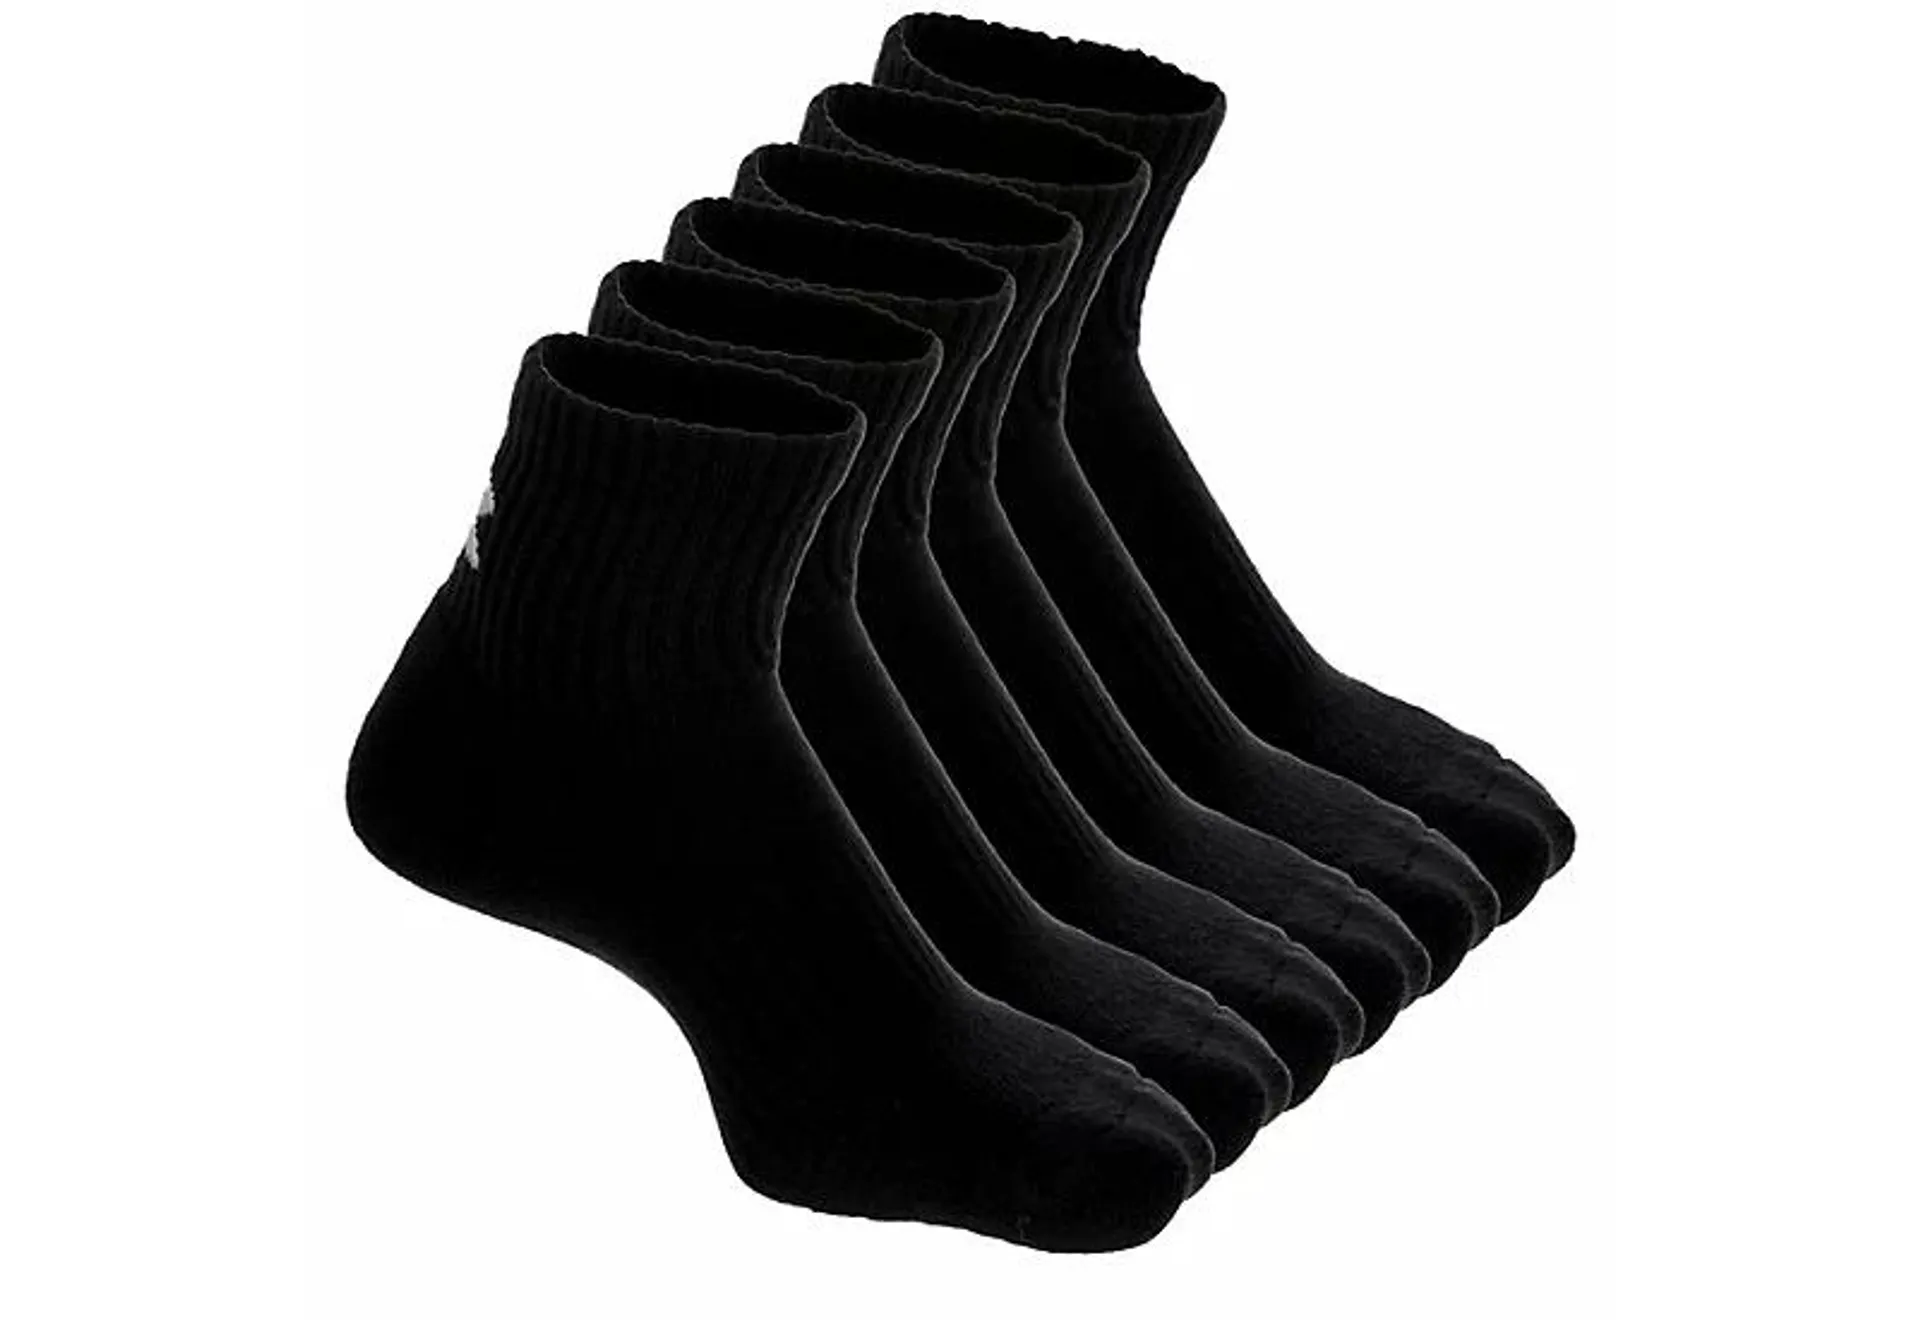 Under Armour Mens Training Cotton Quarter Sock 6 Pairs - Black